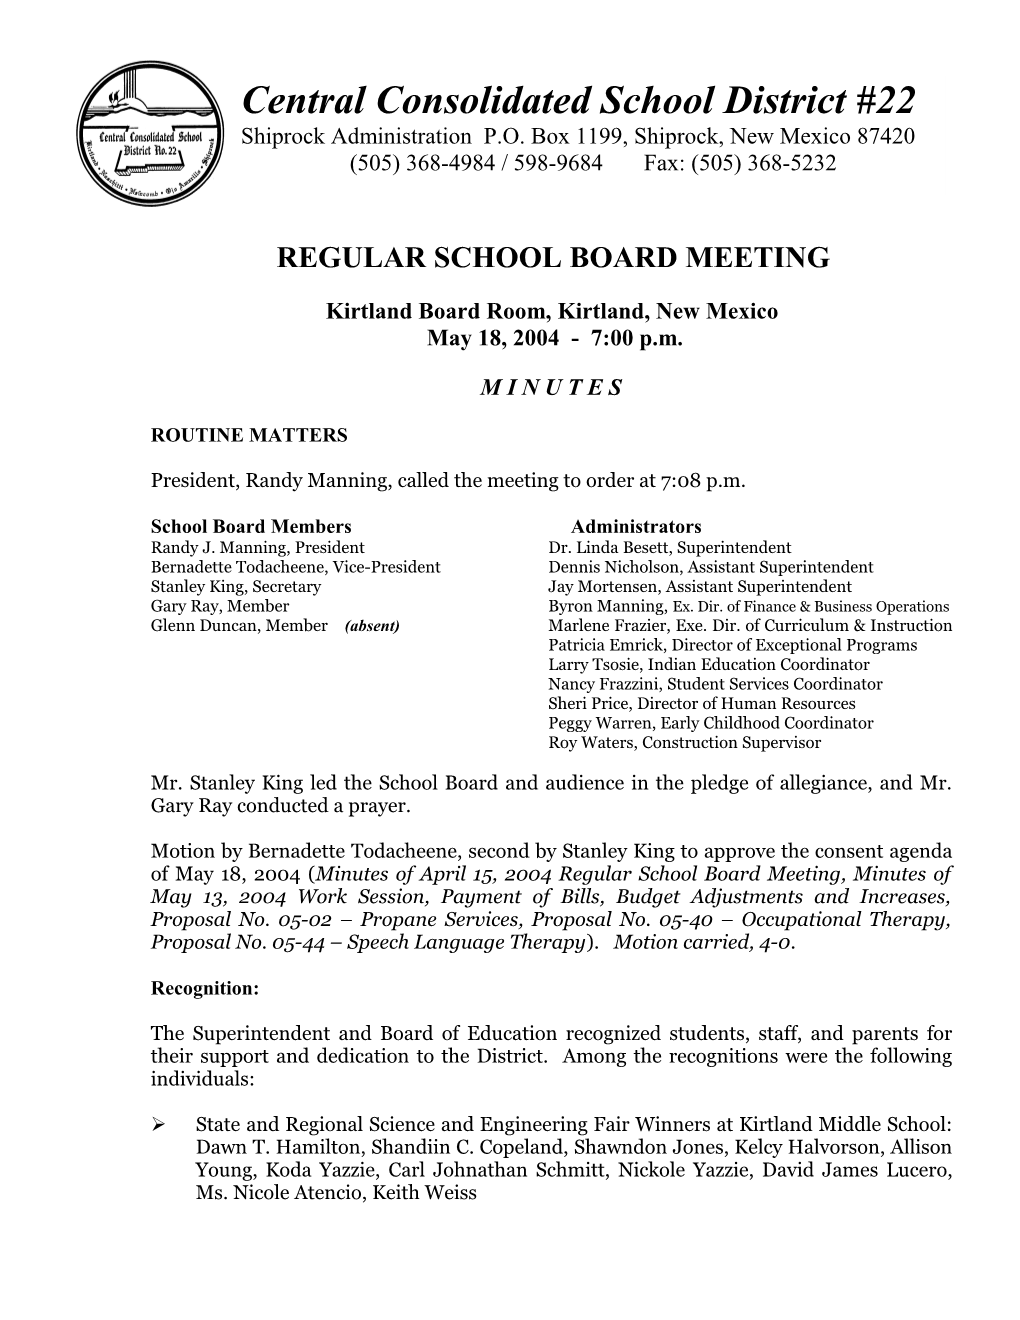 Regular School Board Meeting s10